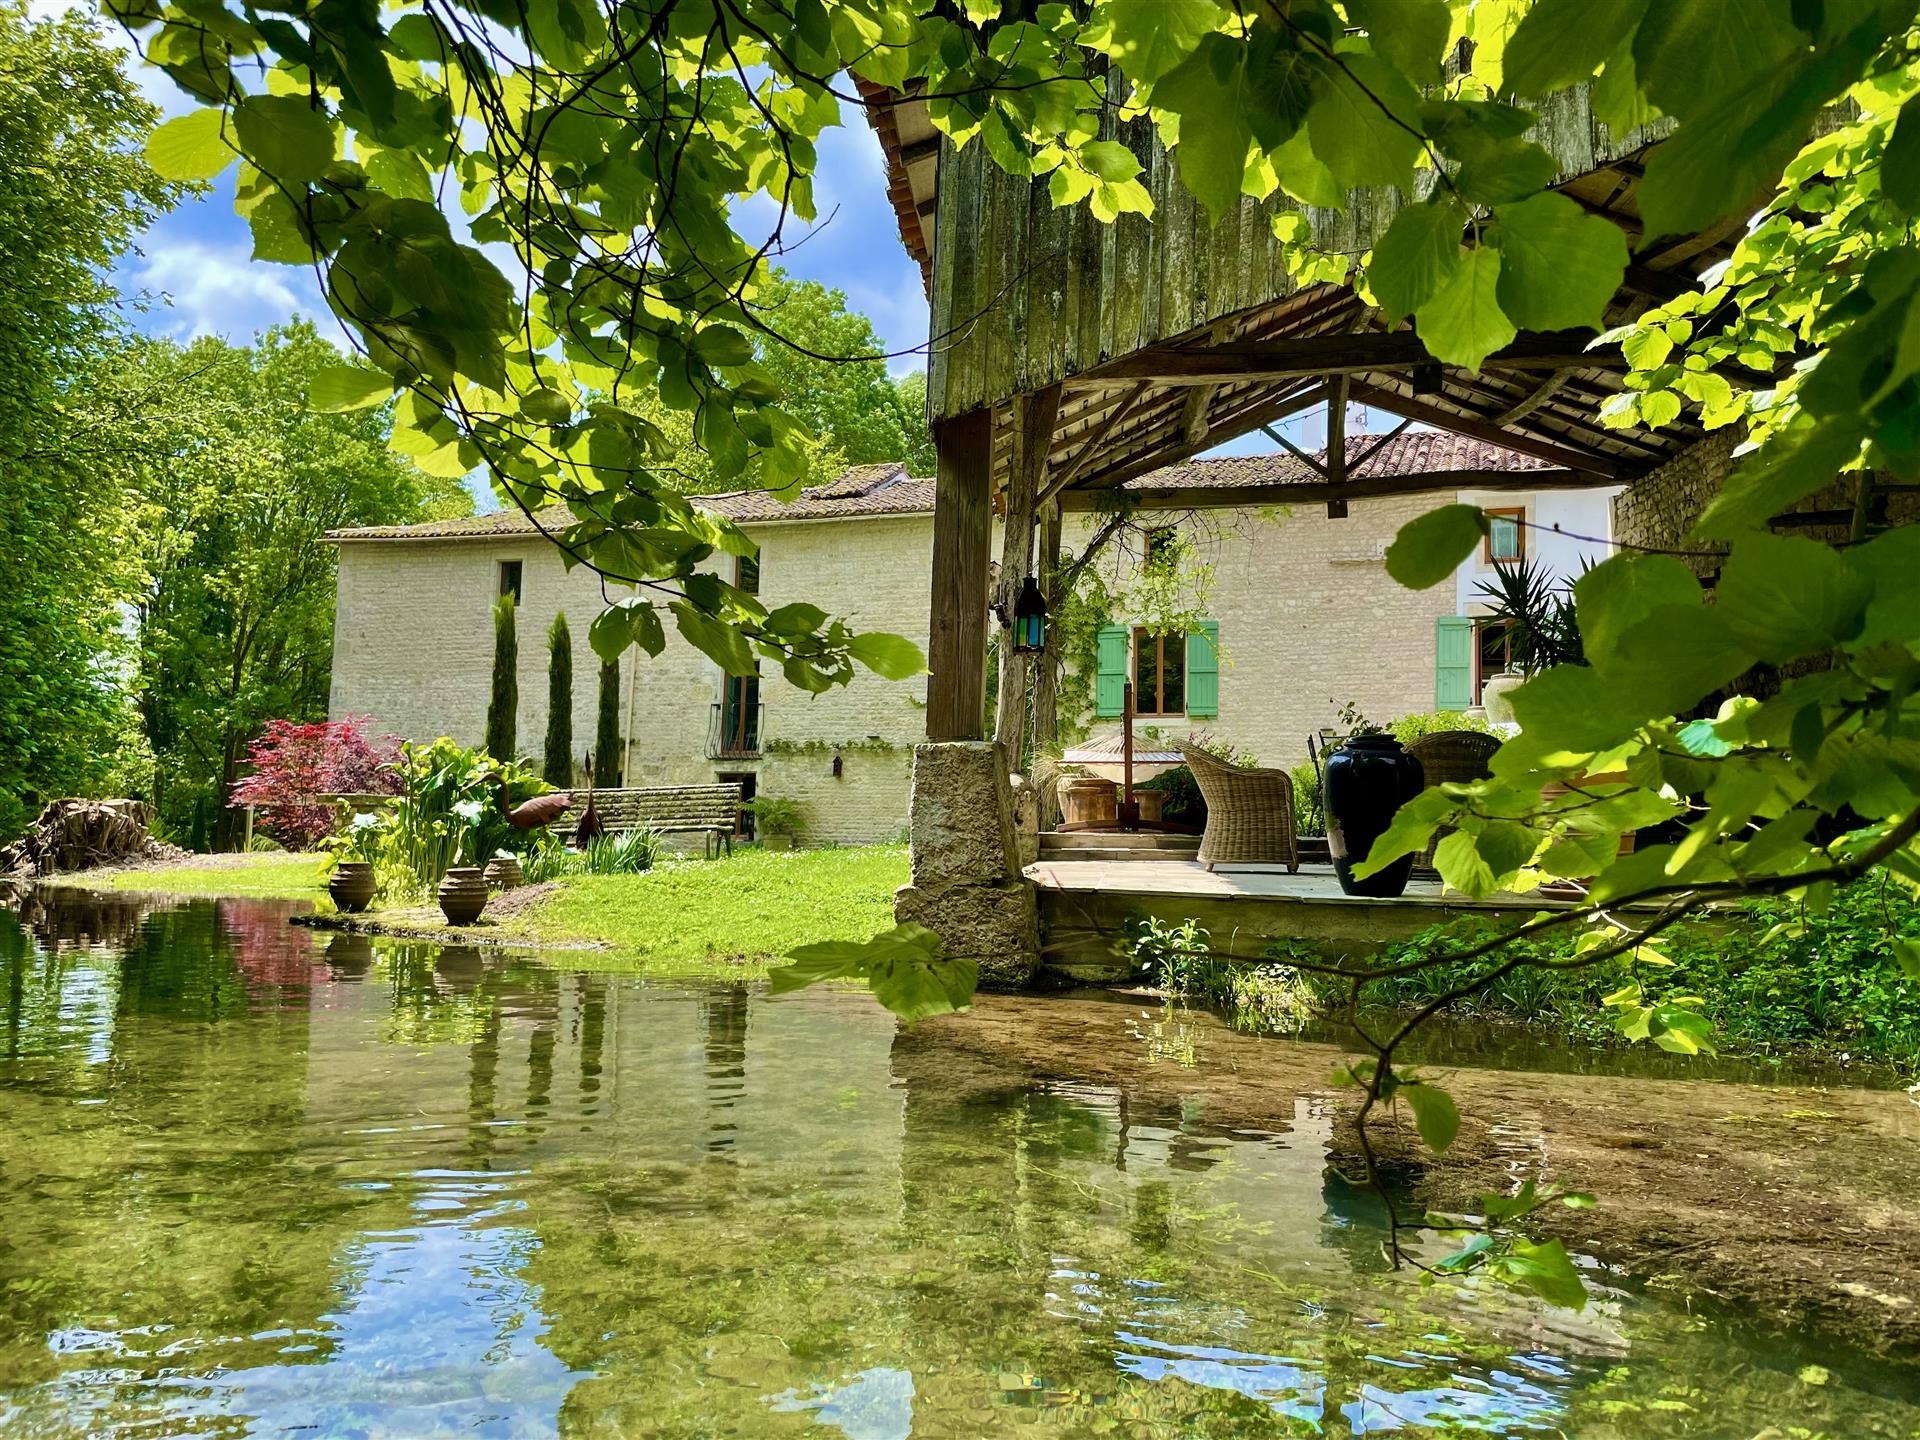 Moară de apă frumos renovată, cu piscină și grădini exotice